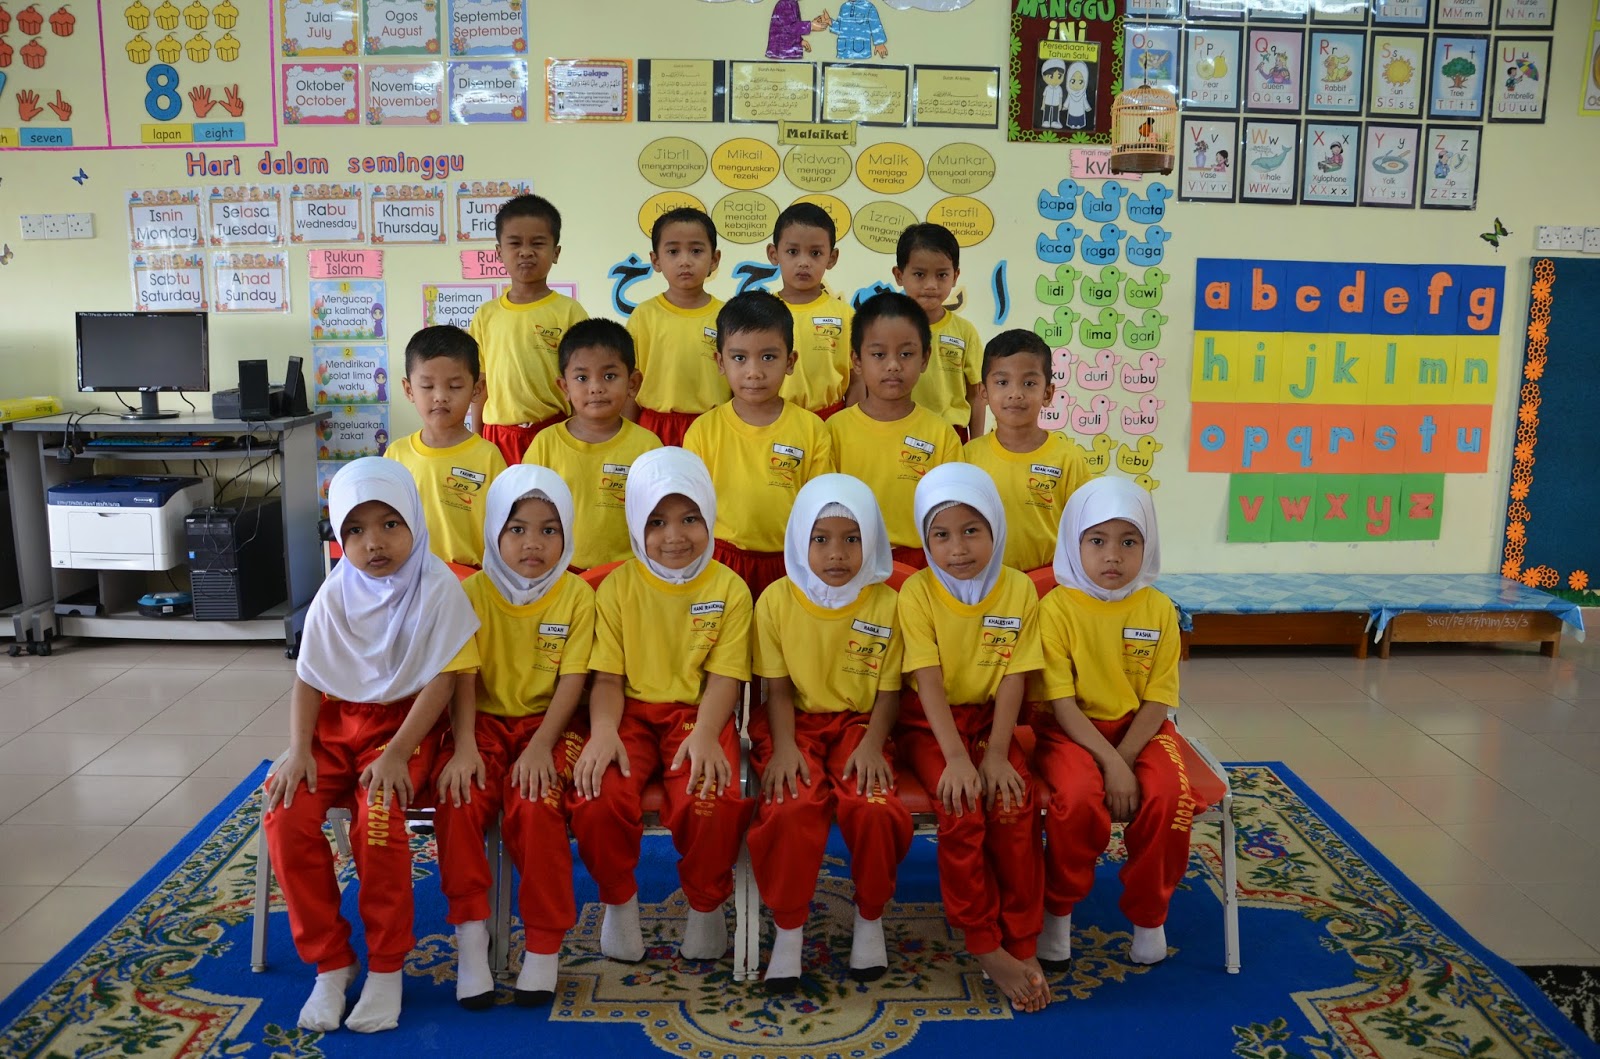 Prasekolah Sk Gesir Tengah Hulu Selangor Hari Graduasi Prasekolah 2014